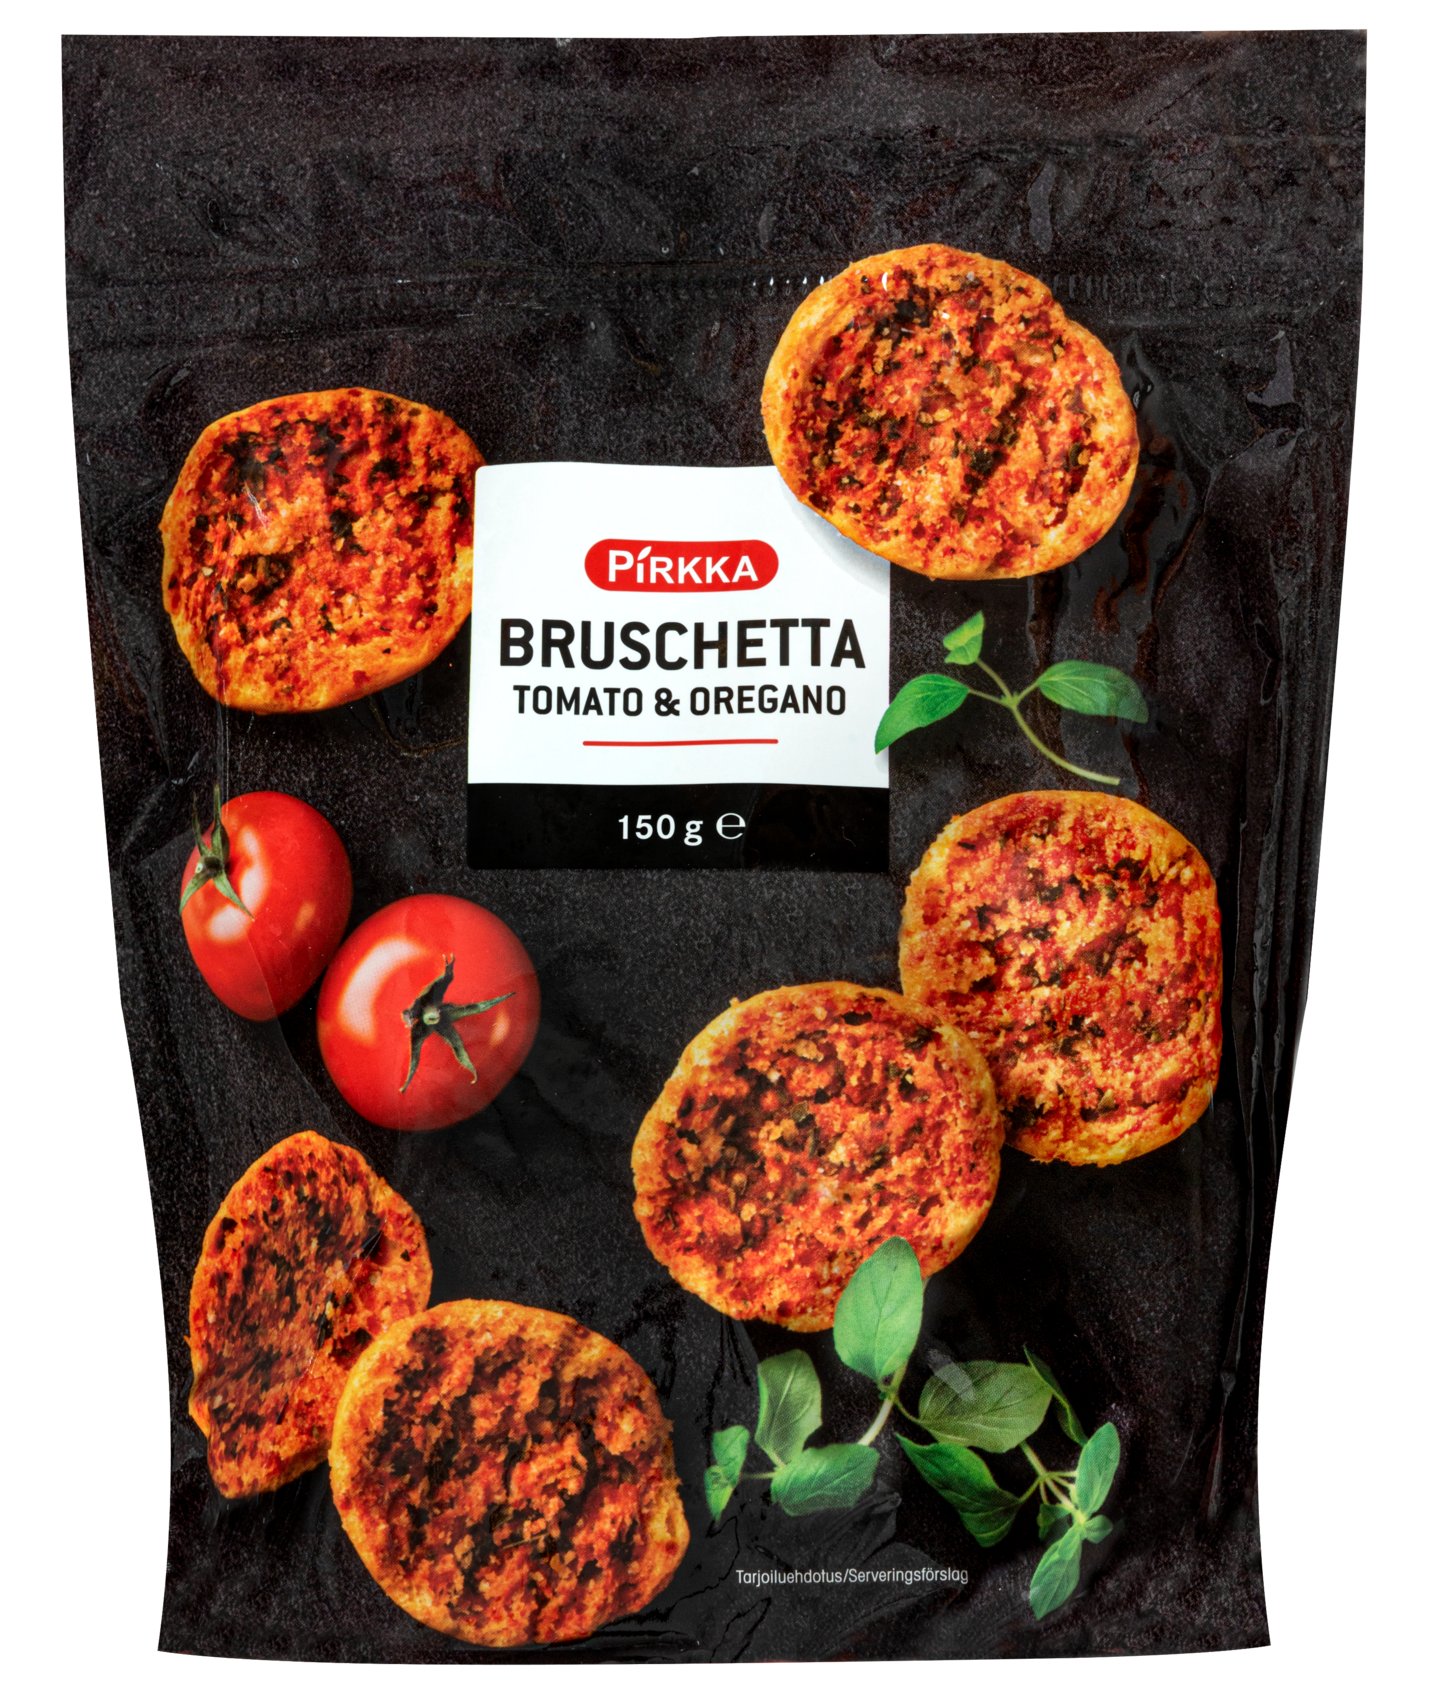 Pirkka Bruschetta tomato & oregano 150g | K-Ruoka Verkkokauppa